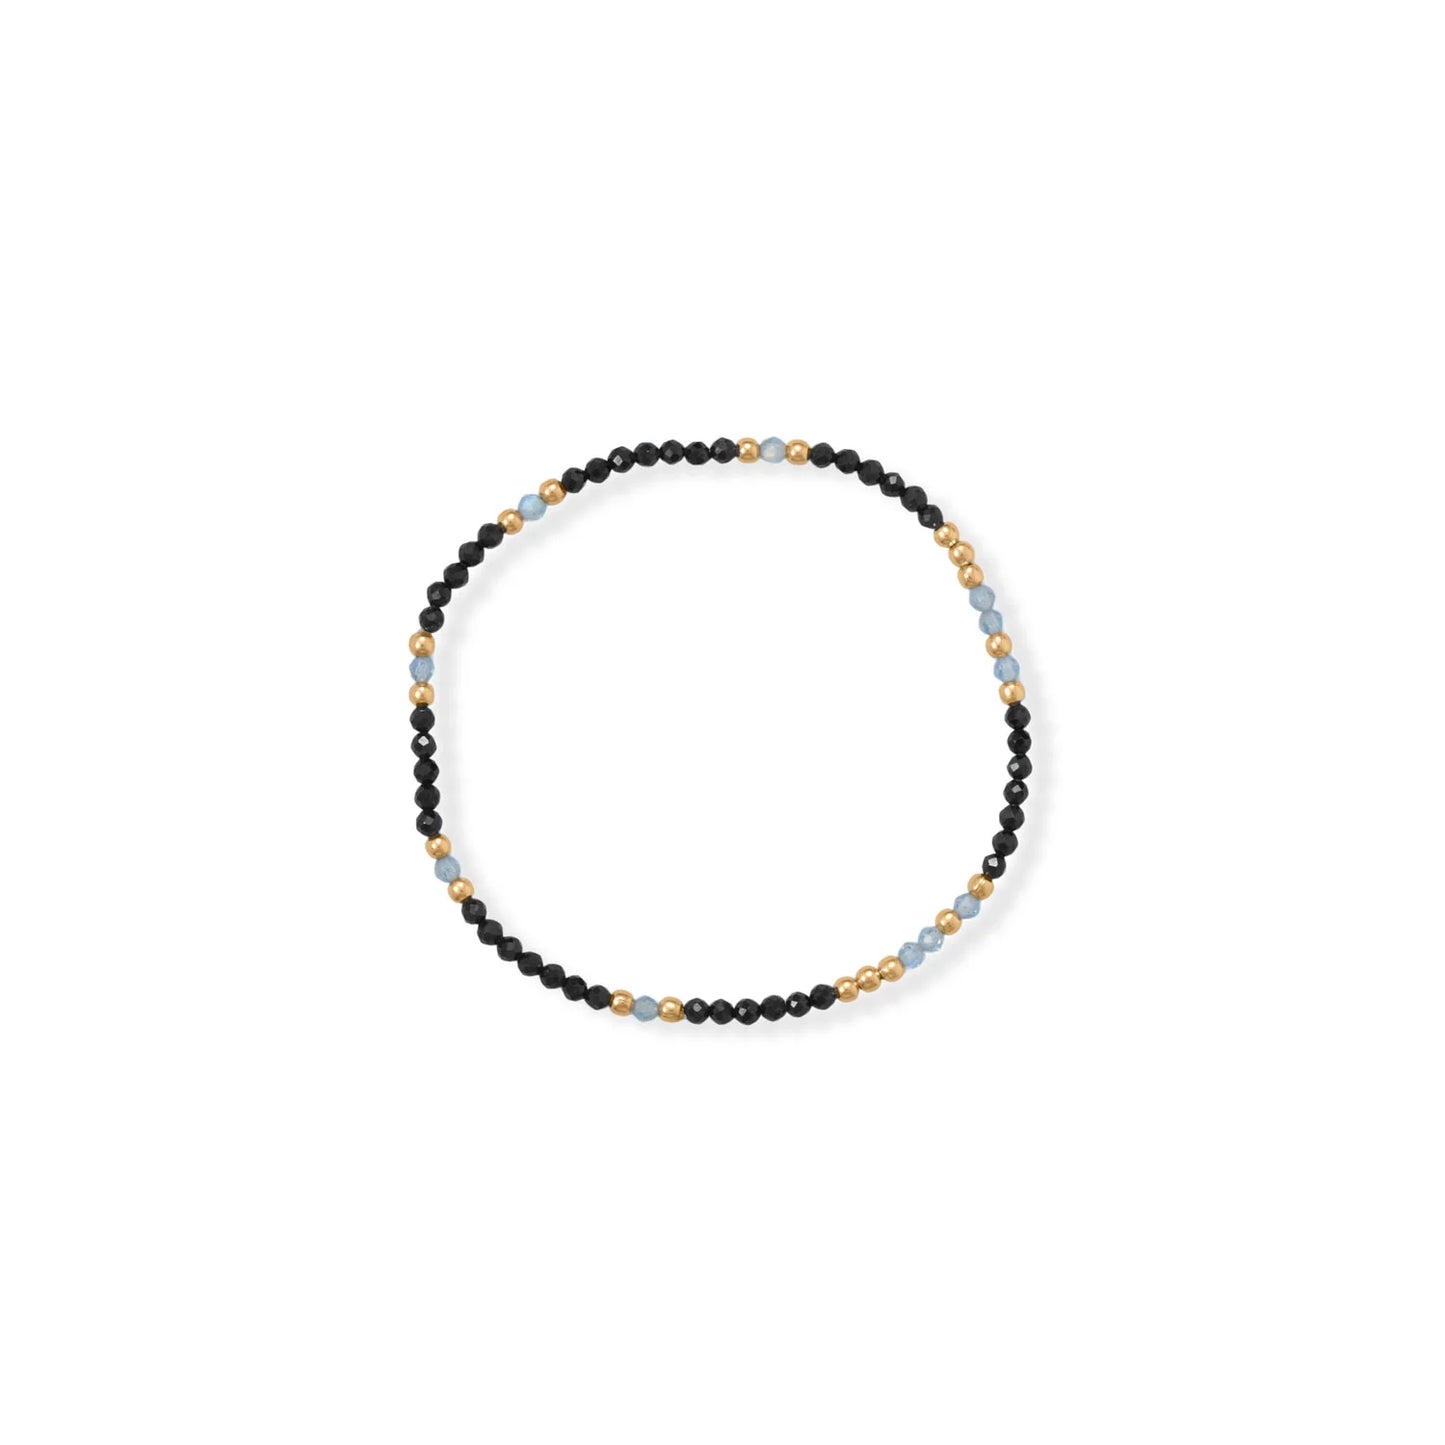 Labradorite & Black Spinel Bracelet Set - 14K Gold Plated